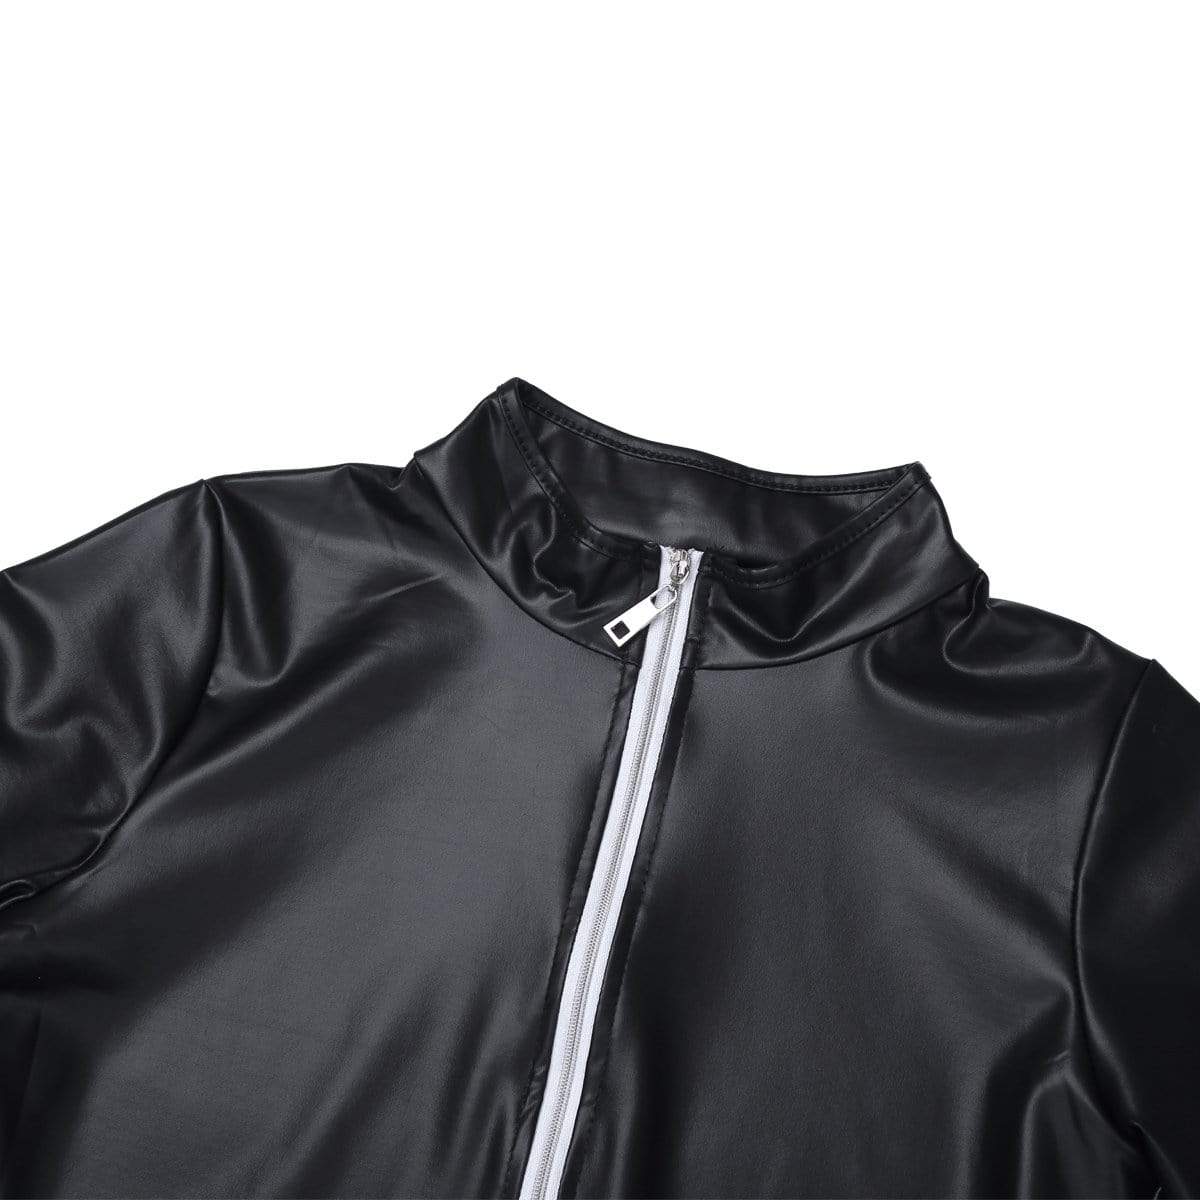 Long Sleeve Full Zippered Leather Bodysuit